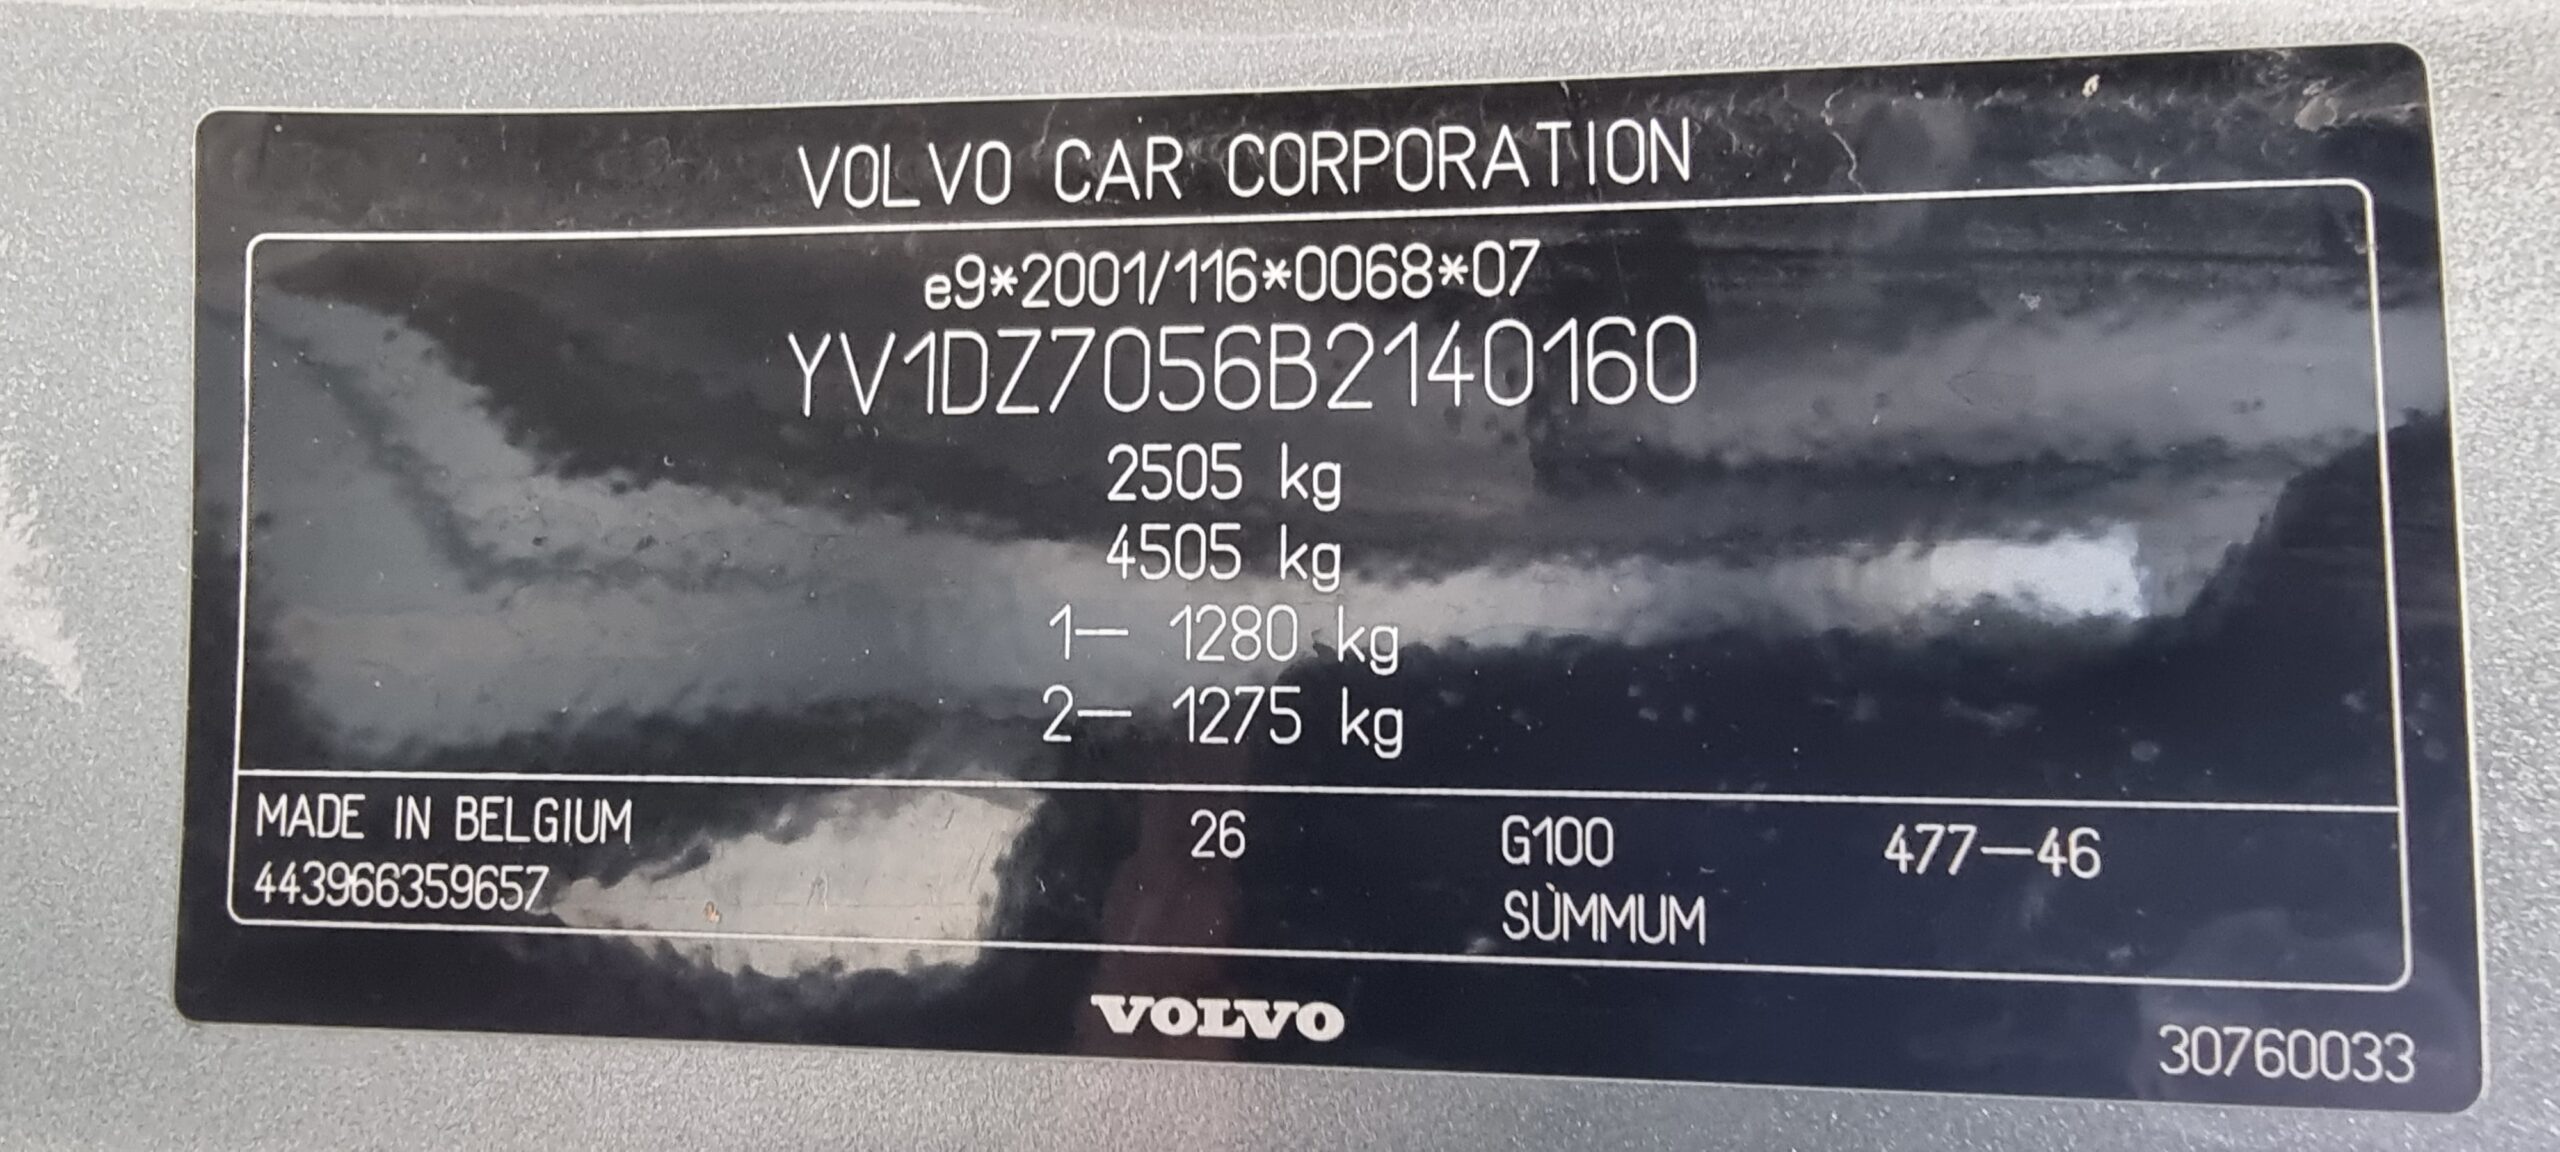 VOLVO XC 60 D5 AWD, 2.4 DIESEL, 205 CP, EURO 5, AN 2010